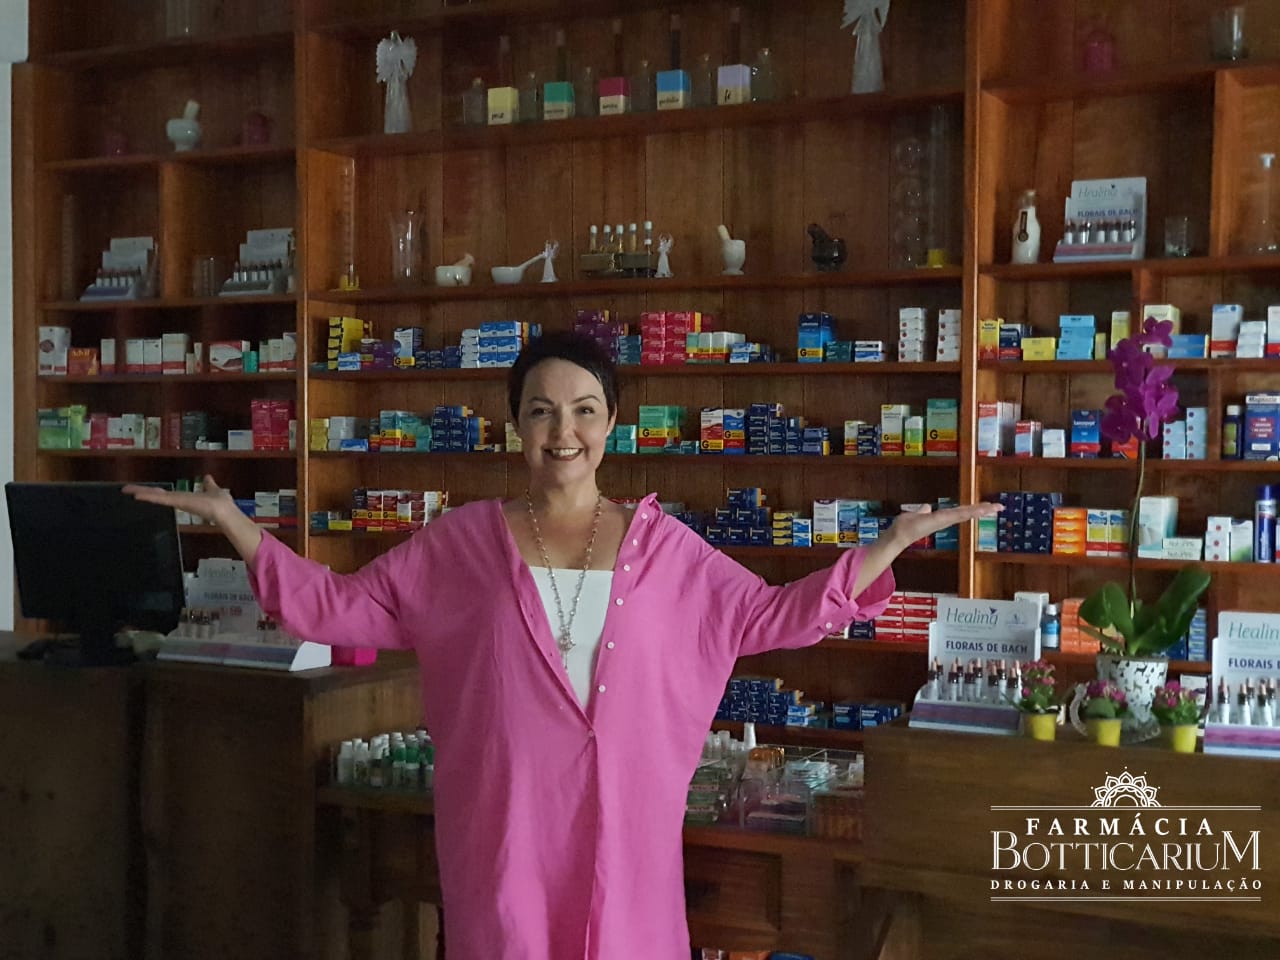 Farmácia Botticarium: drogaria e manipulação com preços justos e de qualidade